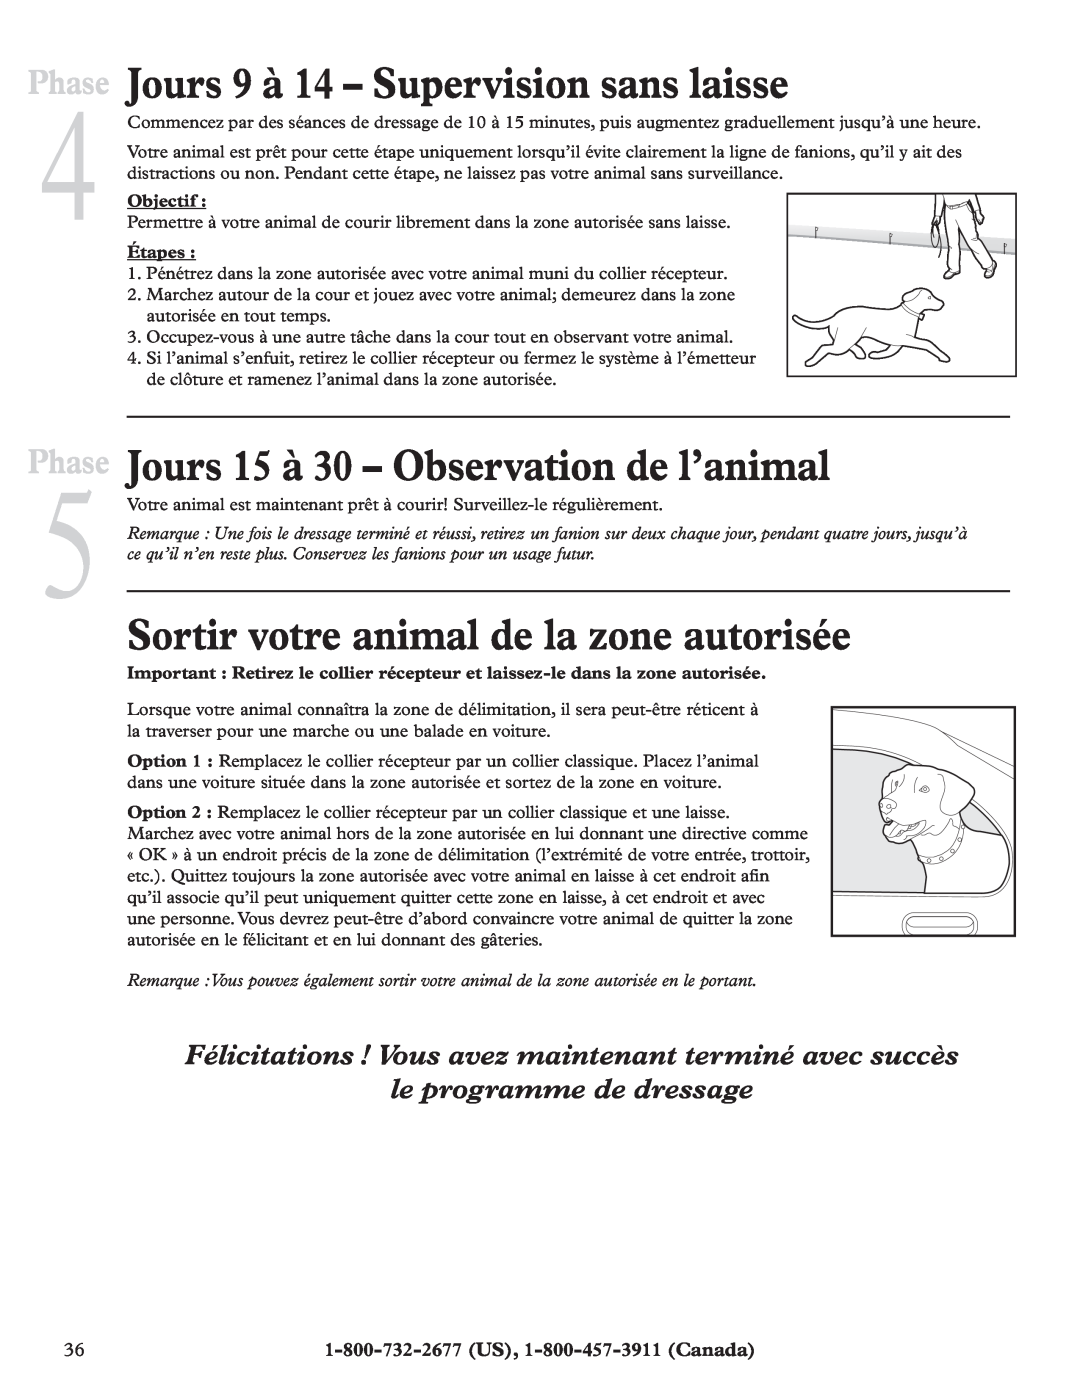 Petsafe RFA-200 Jours 9 à 14 - Supervision sans laisse, Jours 15 à 30 - Observation de l’animal, le programme de dressage 